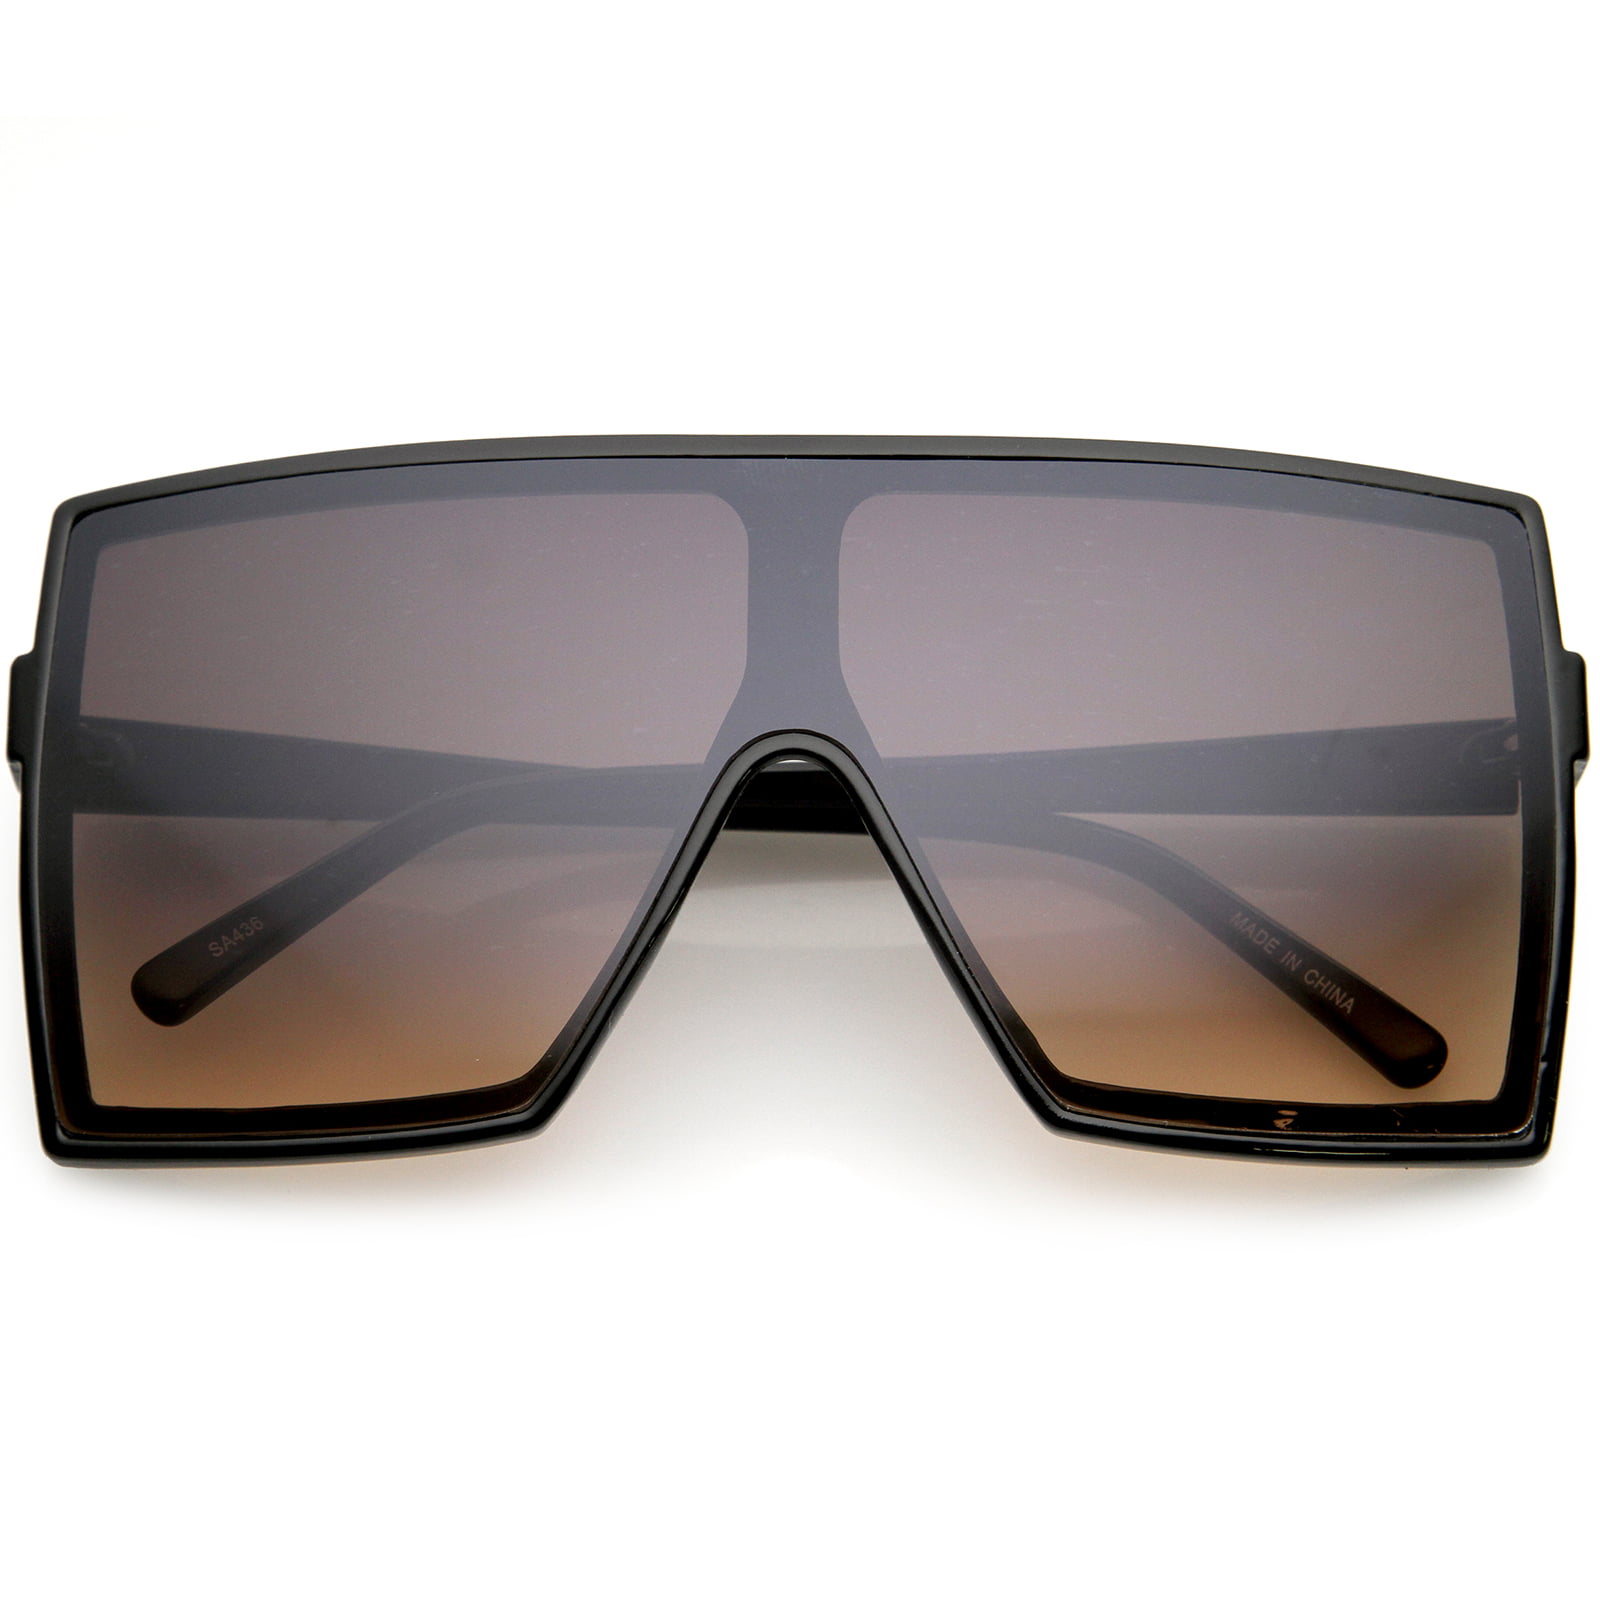 Sunglassla Unisex Retro Horn Rimmed Square Lens Half Frame Sunglasses 53mm Tortoise Gold